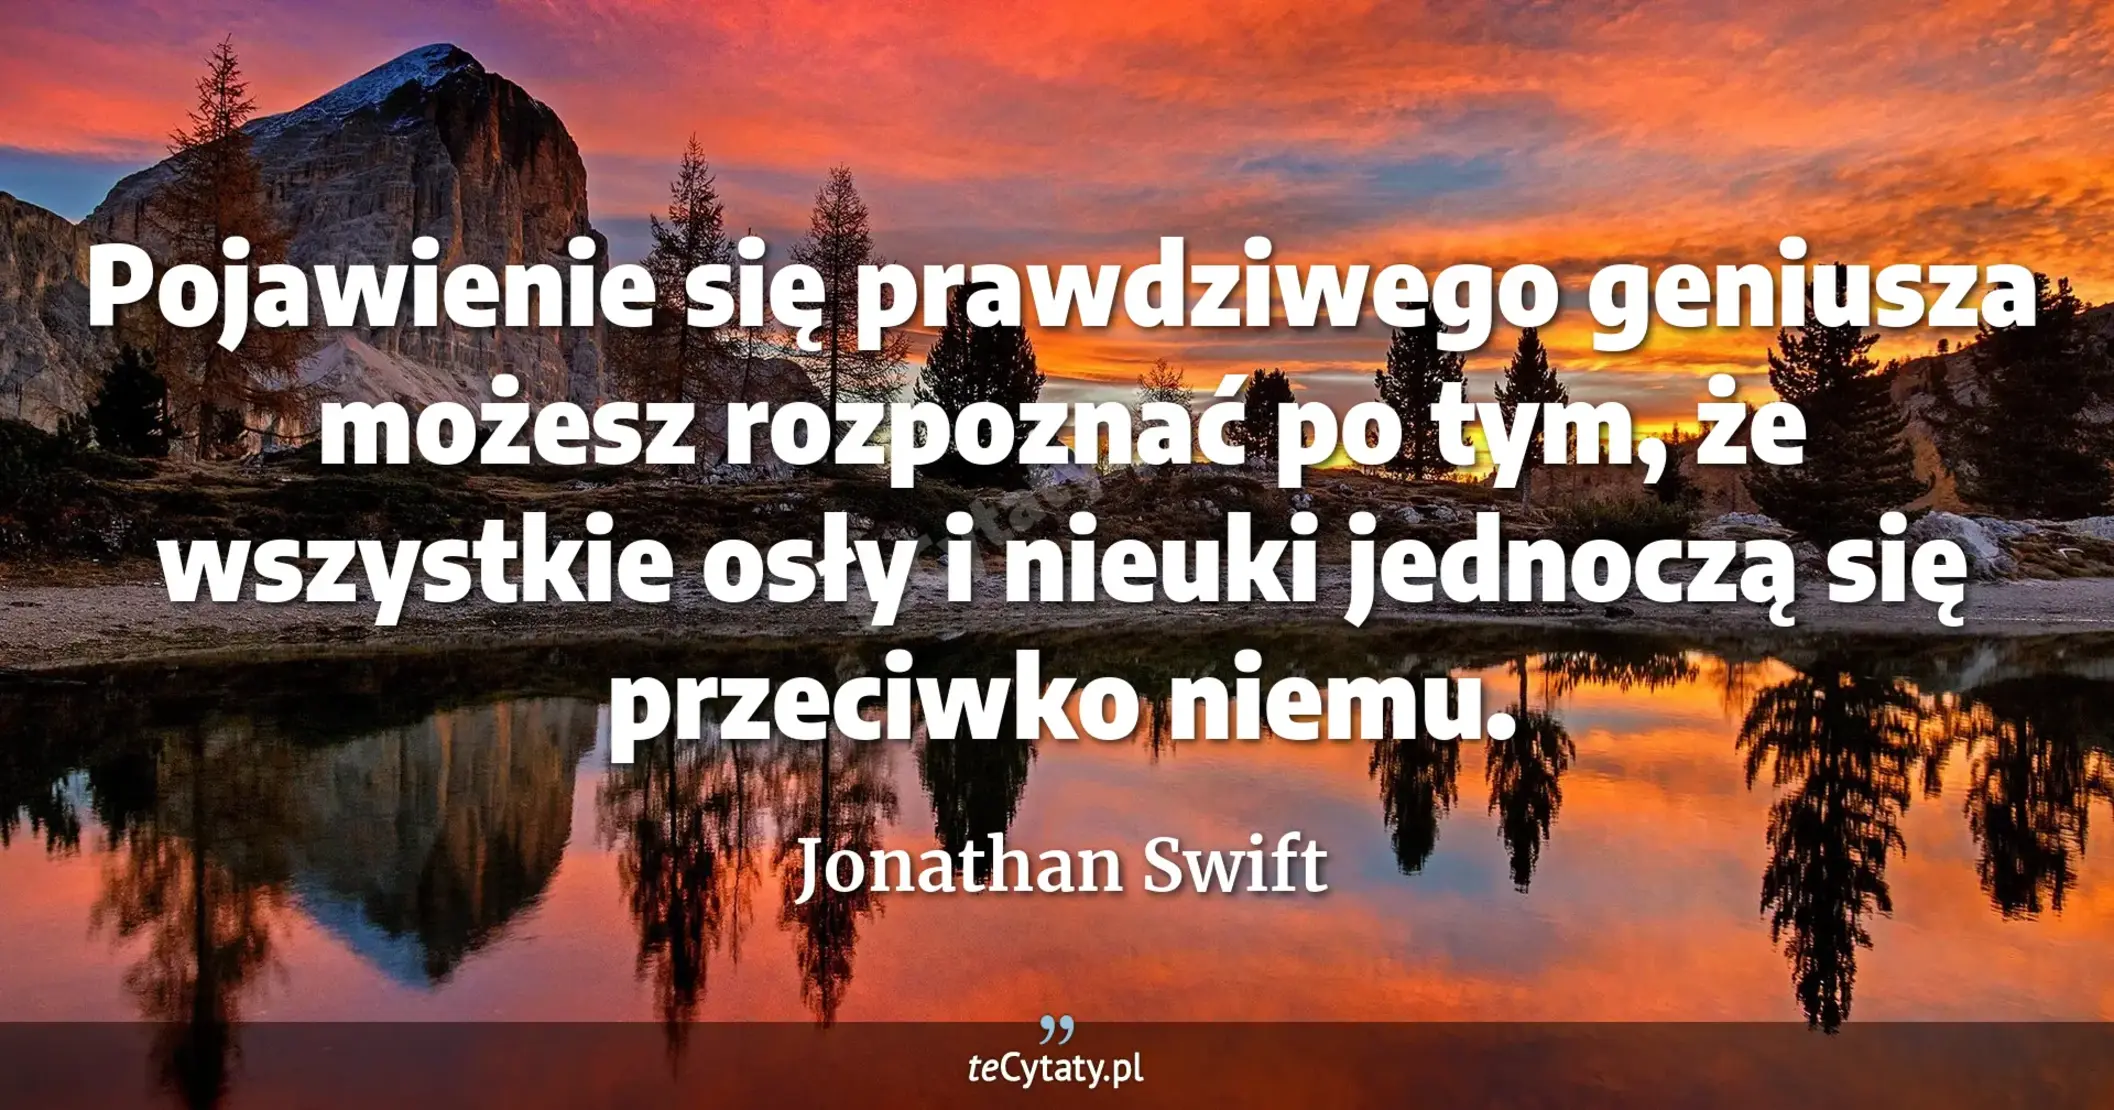 Pojawienie się prawdziwego geniusza możesz rozpoznać po tym, że wszystkie osły i nieuki jednoczą się przeciwko niemu. - Jonathan Swift